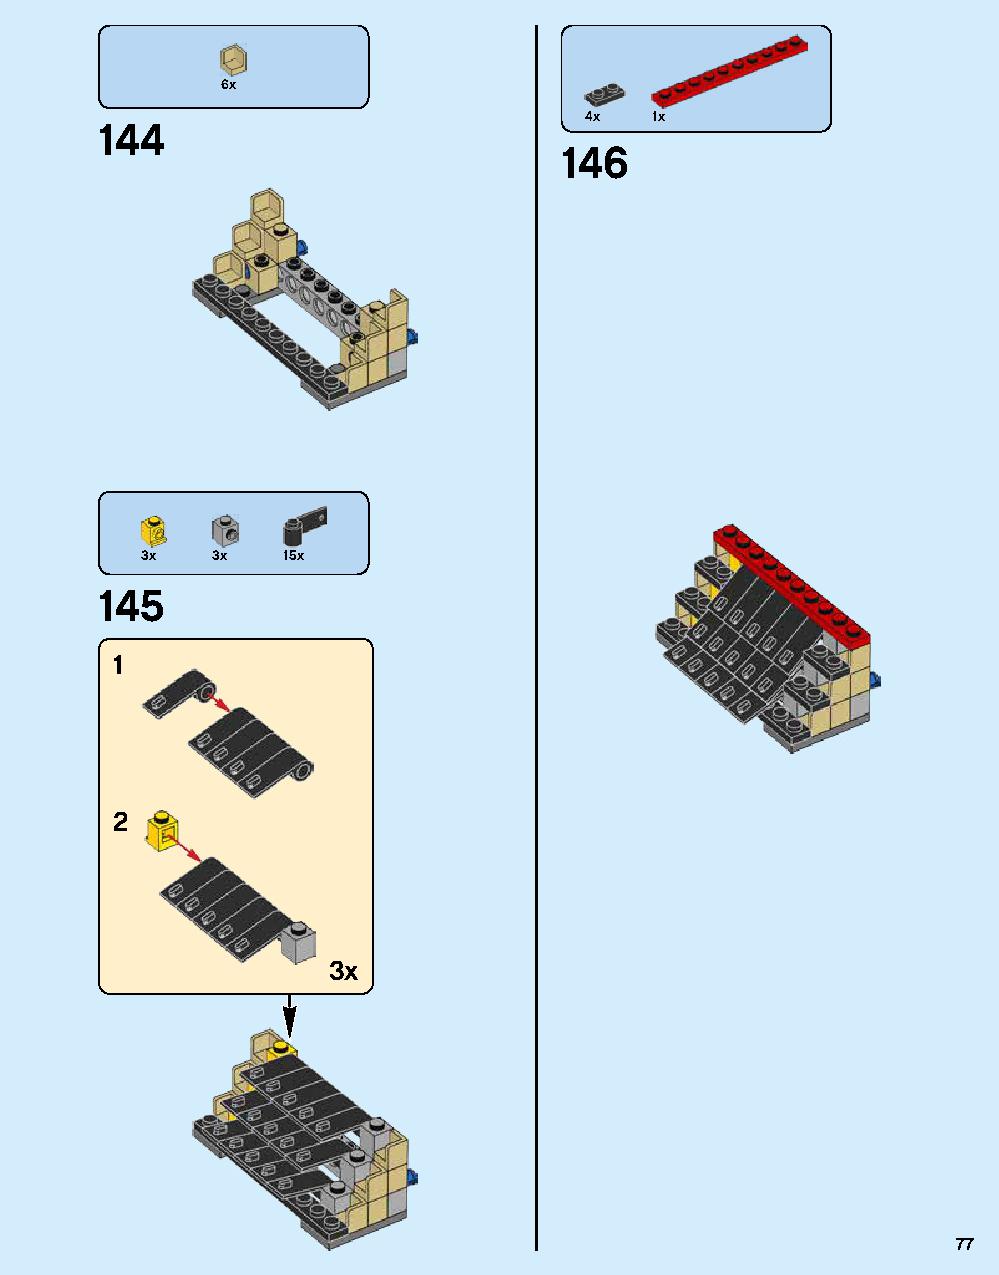 ニンジャゴー シティ 70620 レゴの商品情報 レゴの説明書・組立方法 77 page